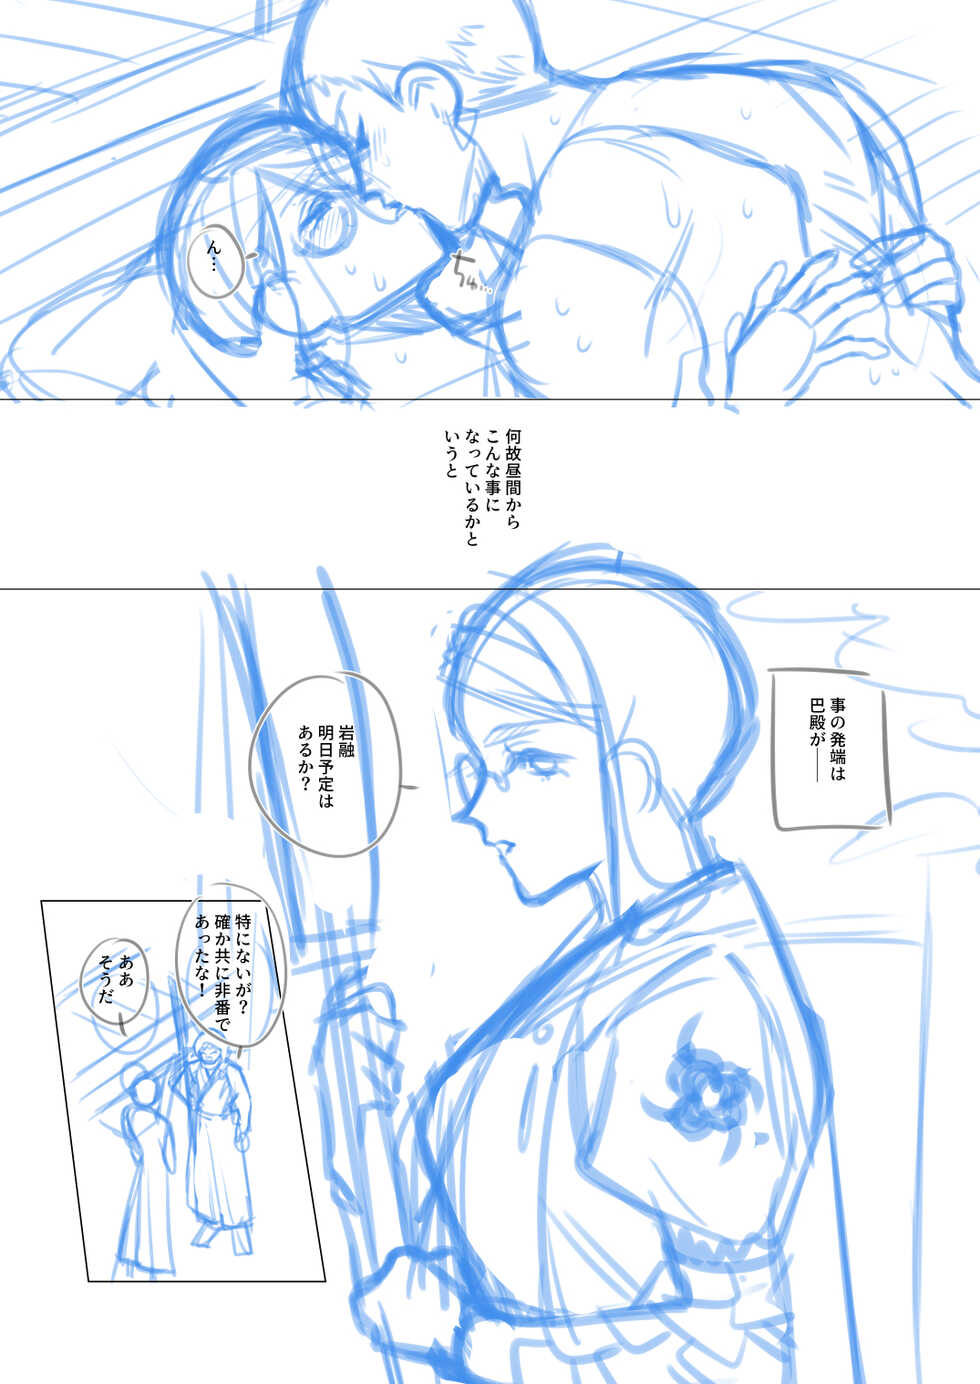 [Kyotajin] [Jotaika] Iwatomoe ♀ Manga No Nemu [36P] - Page 3